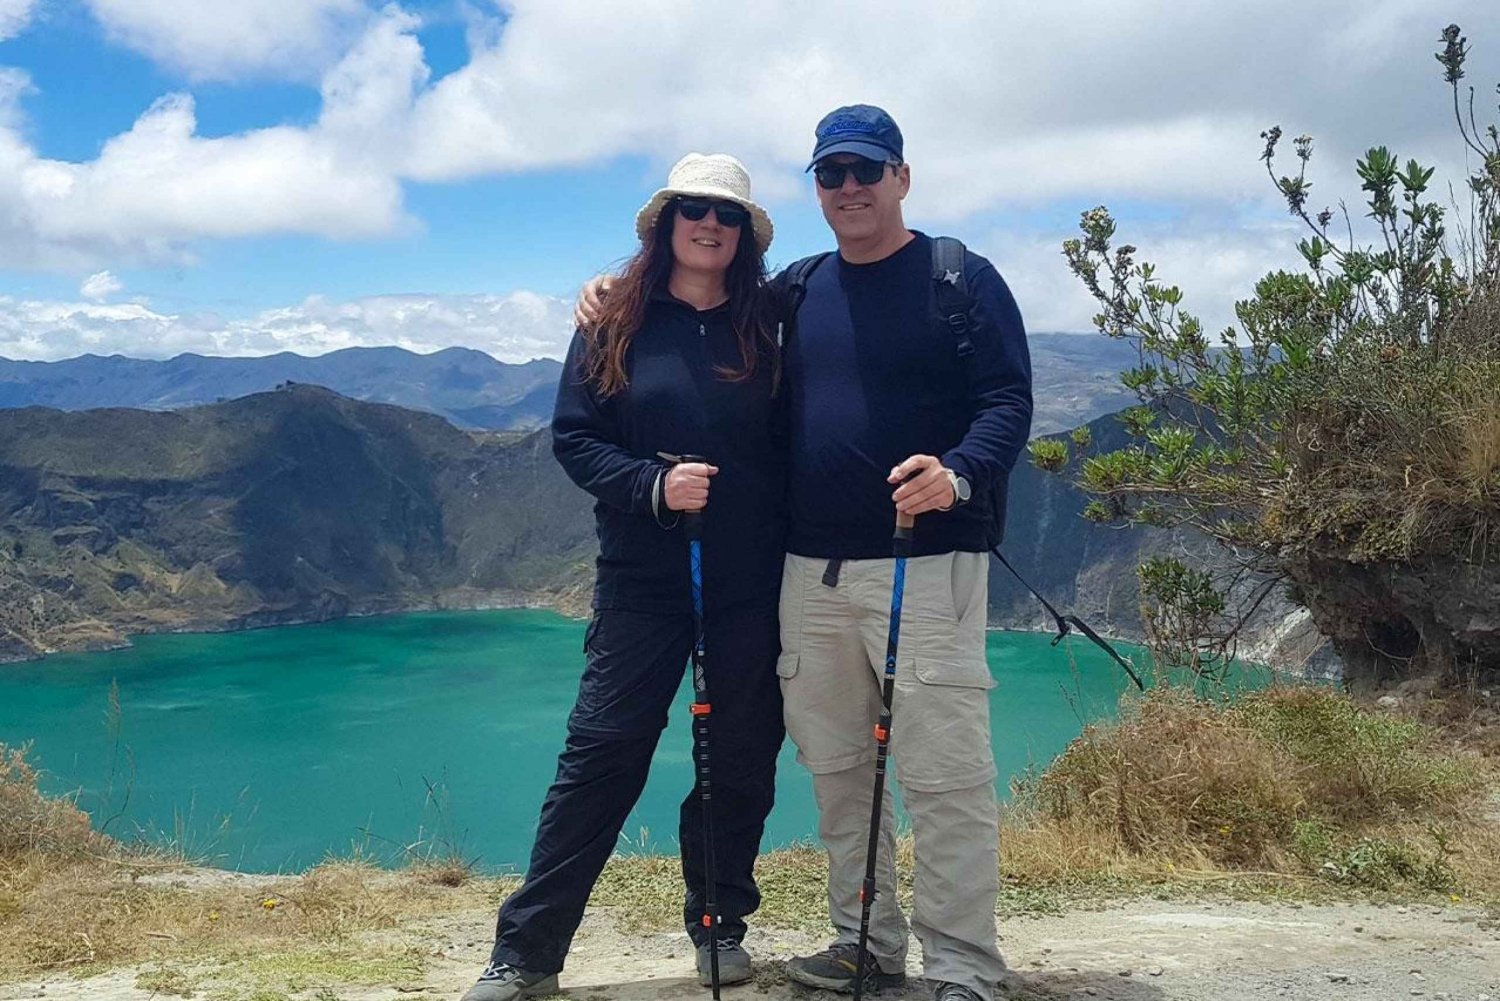 De Quito: Excursão de 1 dia a Quilotoa inclui almoço e ingresso